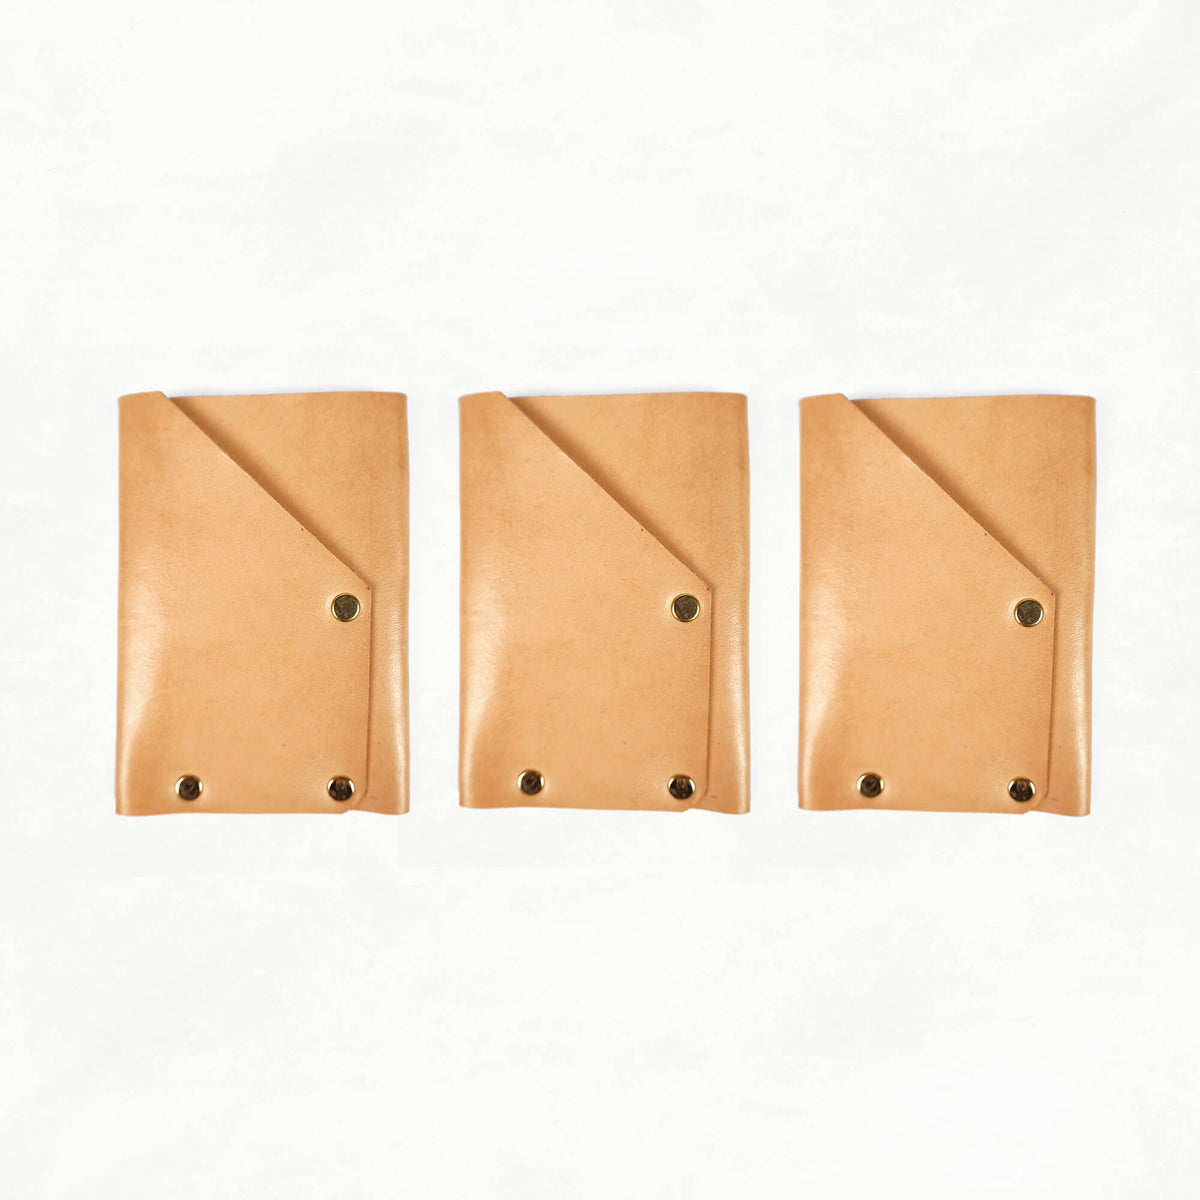 Leather Card Holder Kit - LETHR - CARD - WAL - TAN - 3 - BUNDL - Quick Makes - Klum House